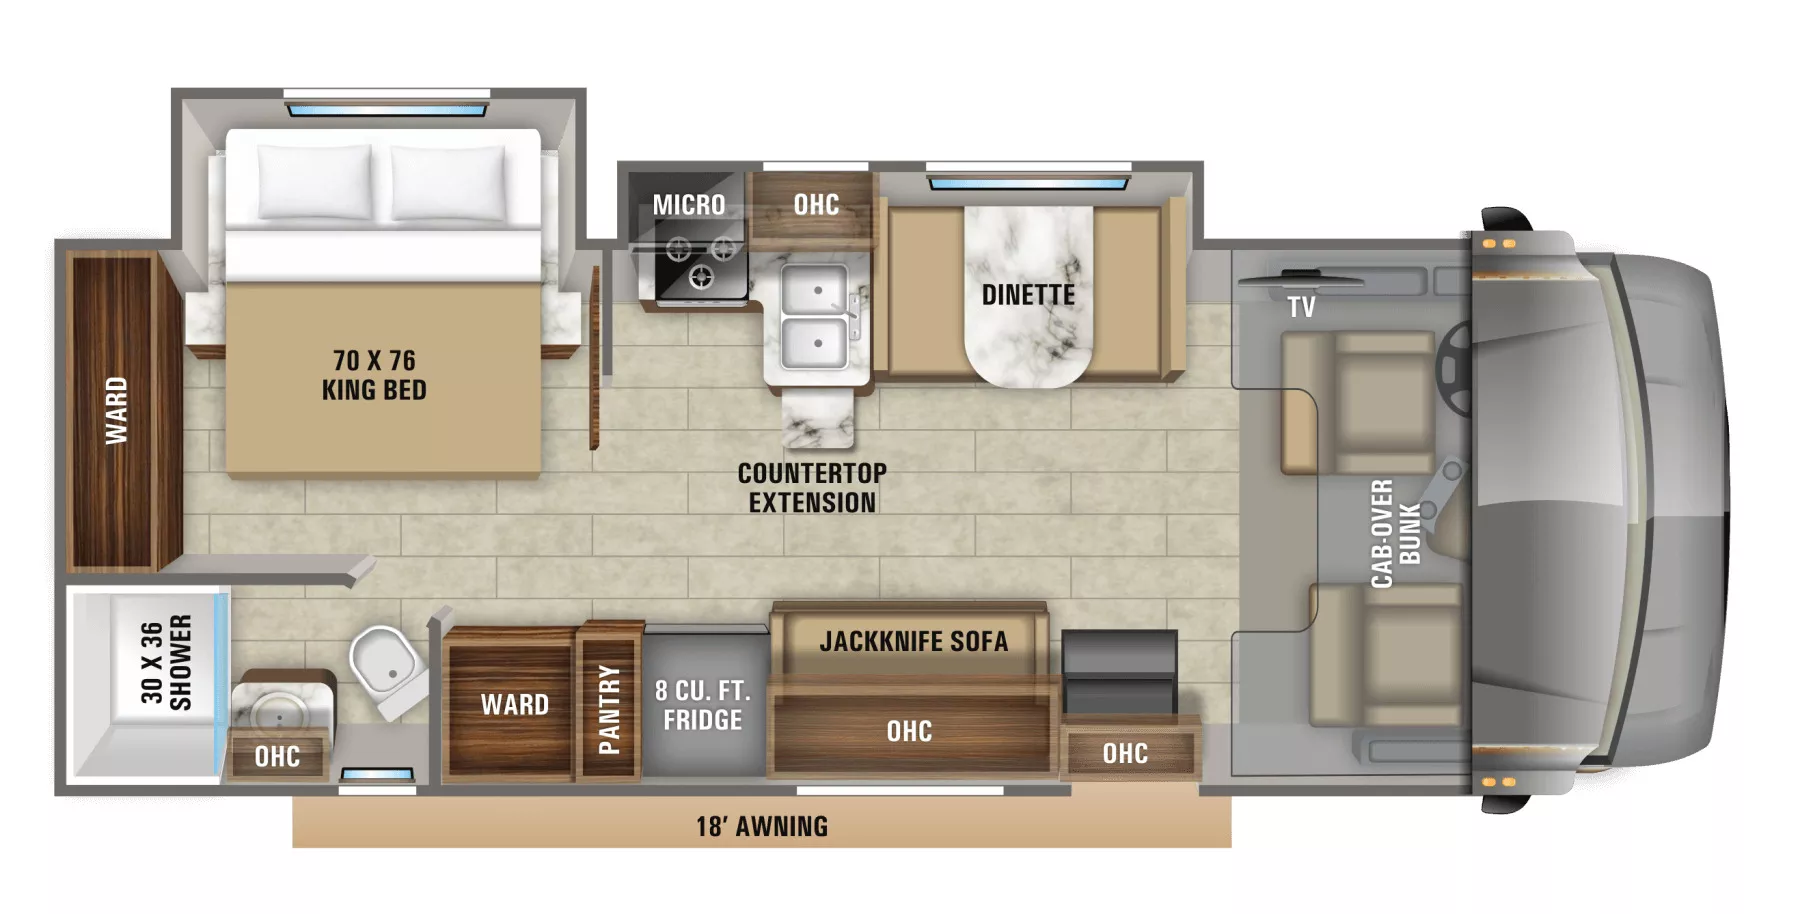 30' 2020 Jayco Greyhawk 27U w/2 Slides - Bunk House Floorplan